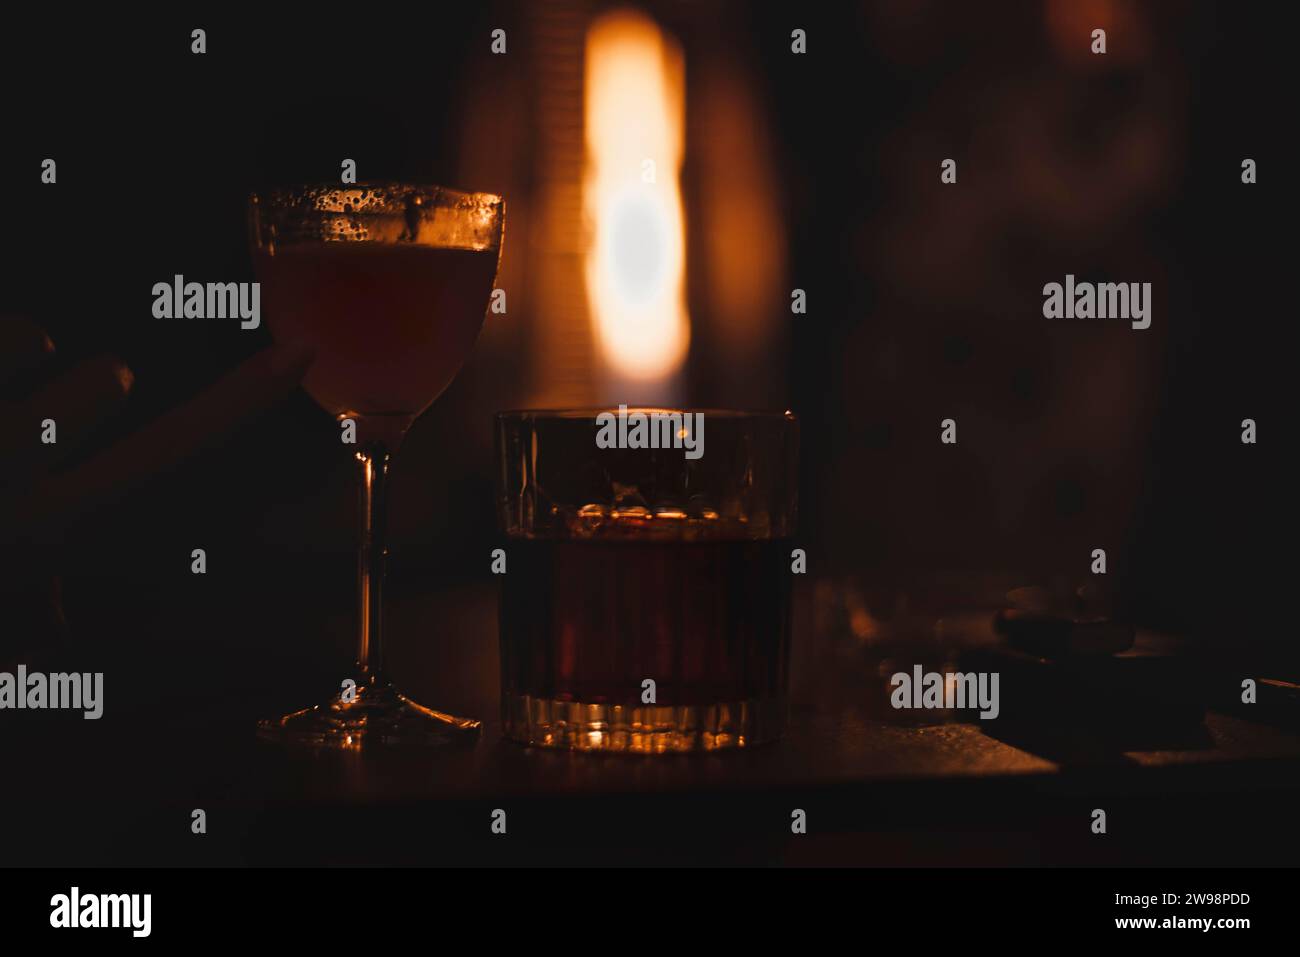 Image d'un verre avec un cocktail dans un bar de nuit sur le fond d'un chauffage enflammé. Concept de restaurant Banque D'Images